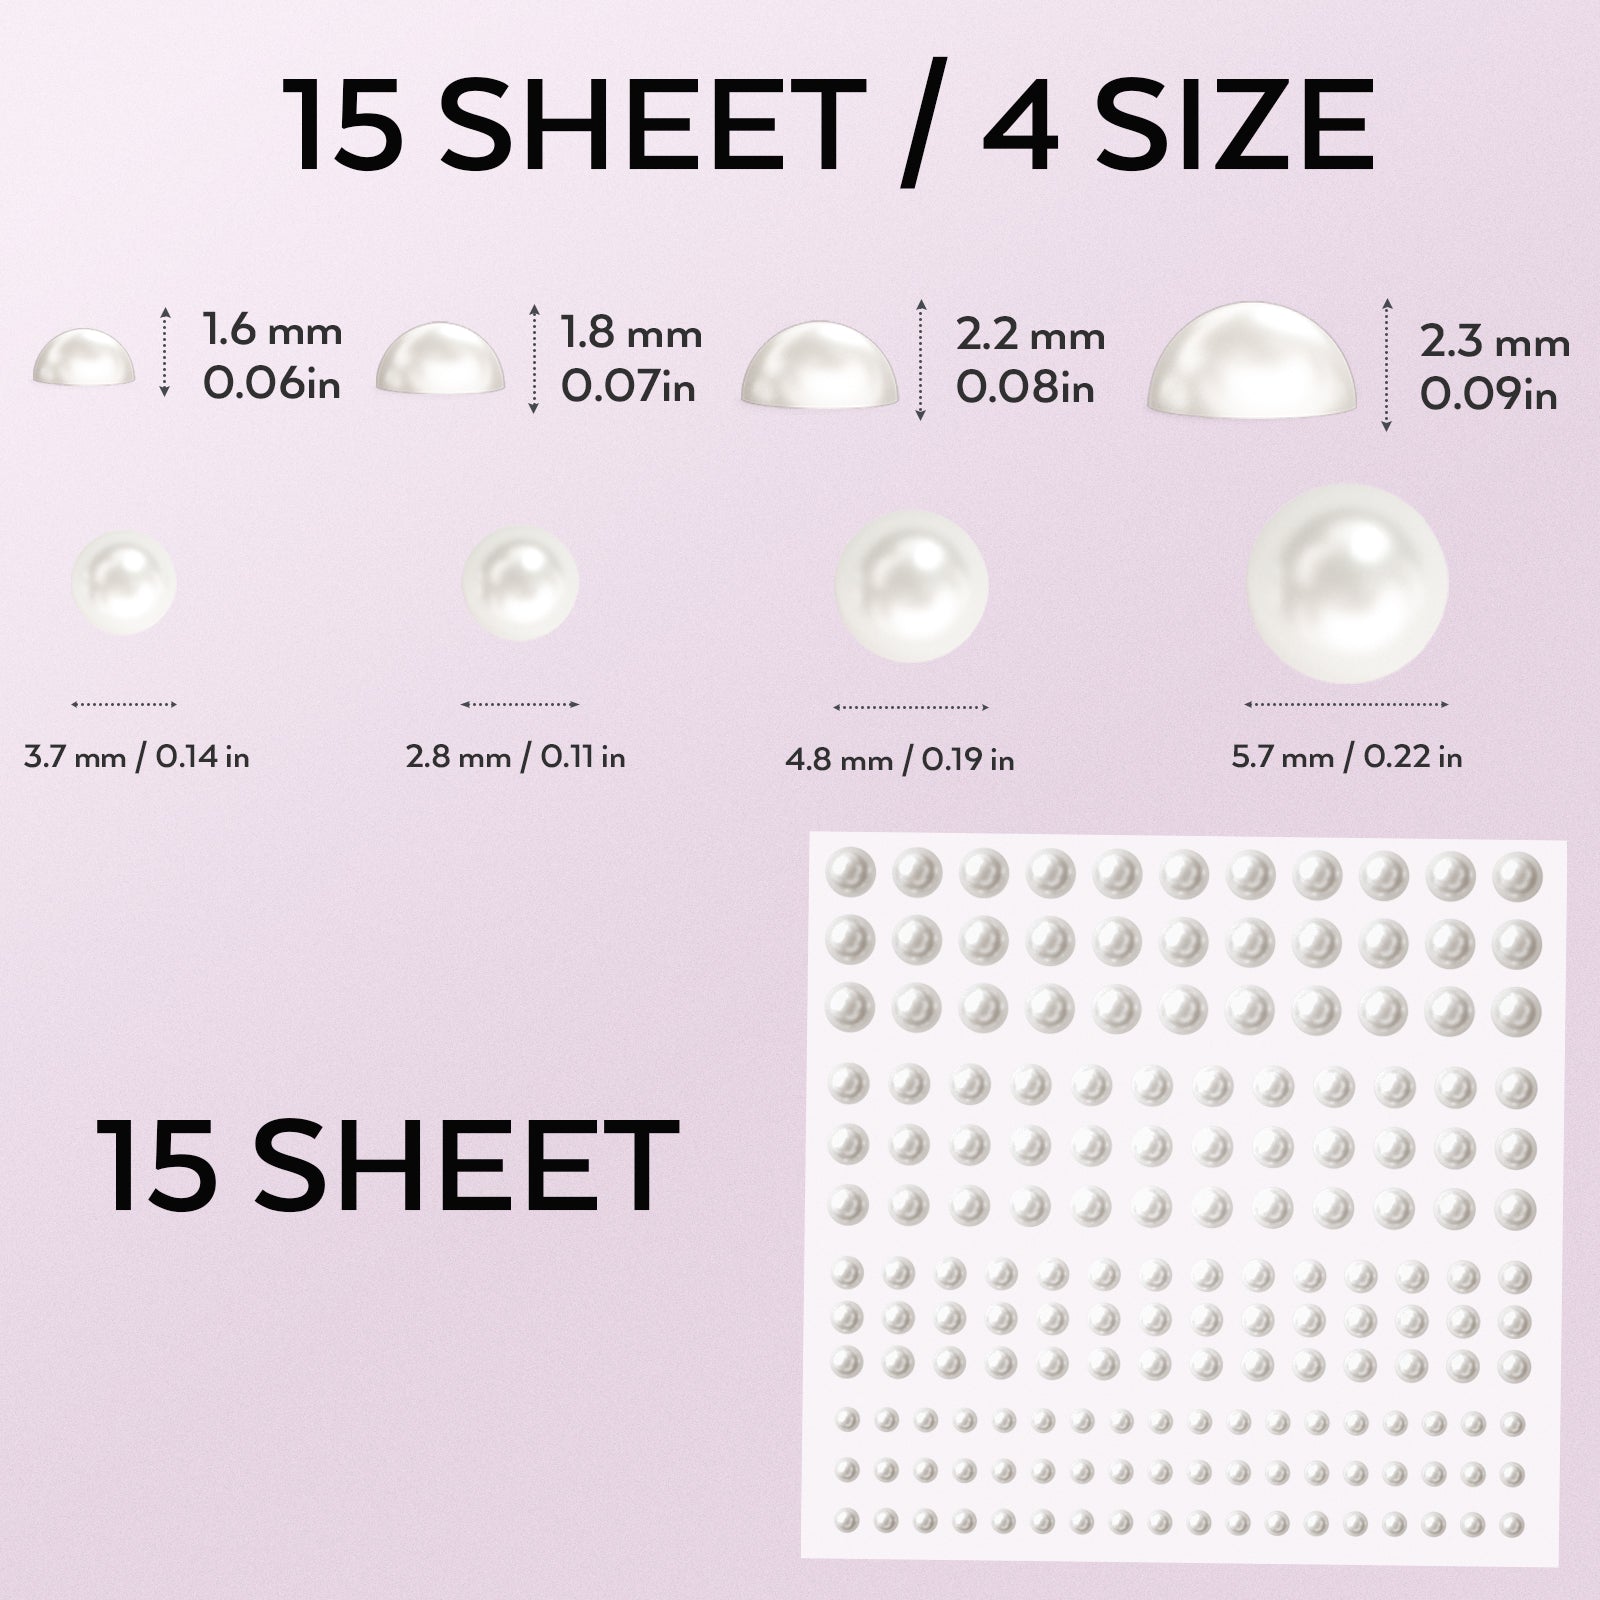 Half-pearls, half-pearls to glue, half-pearls 10 mm, scrapbooking  half-pearls, 20 pieces